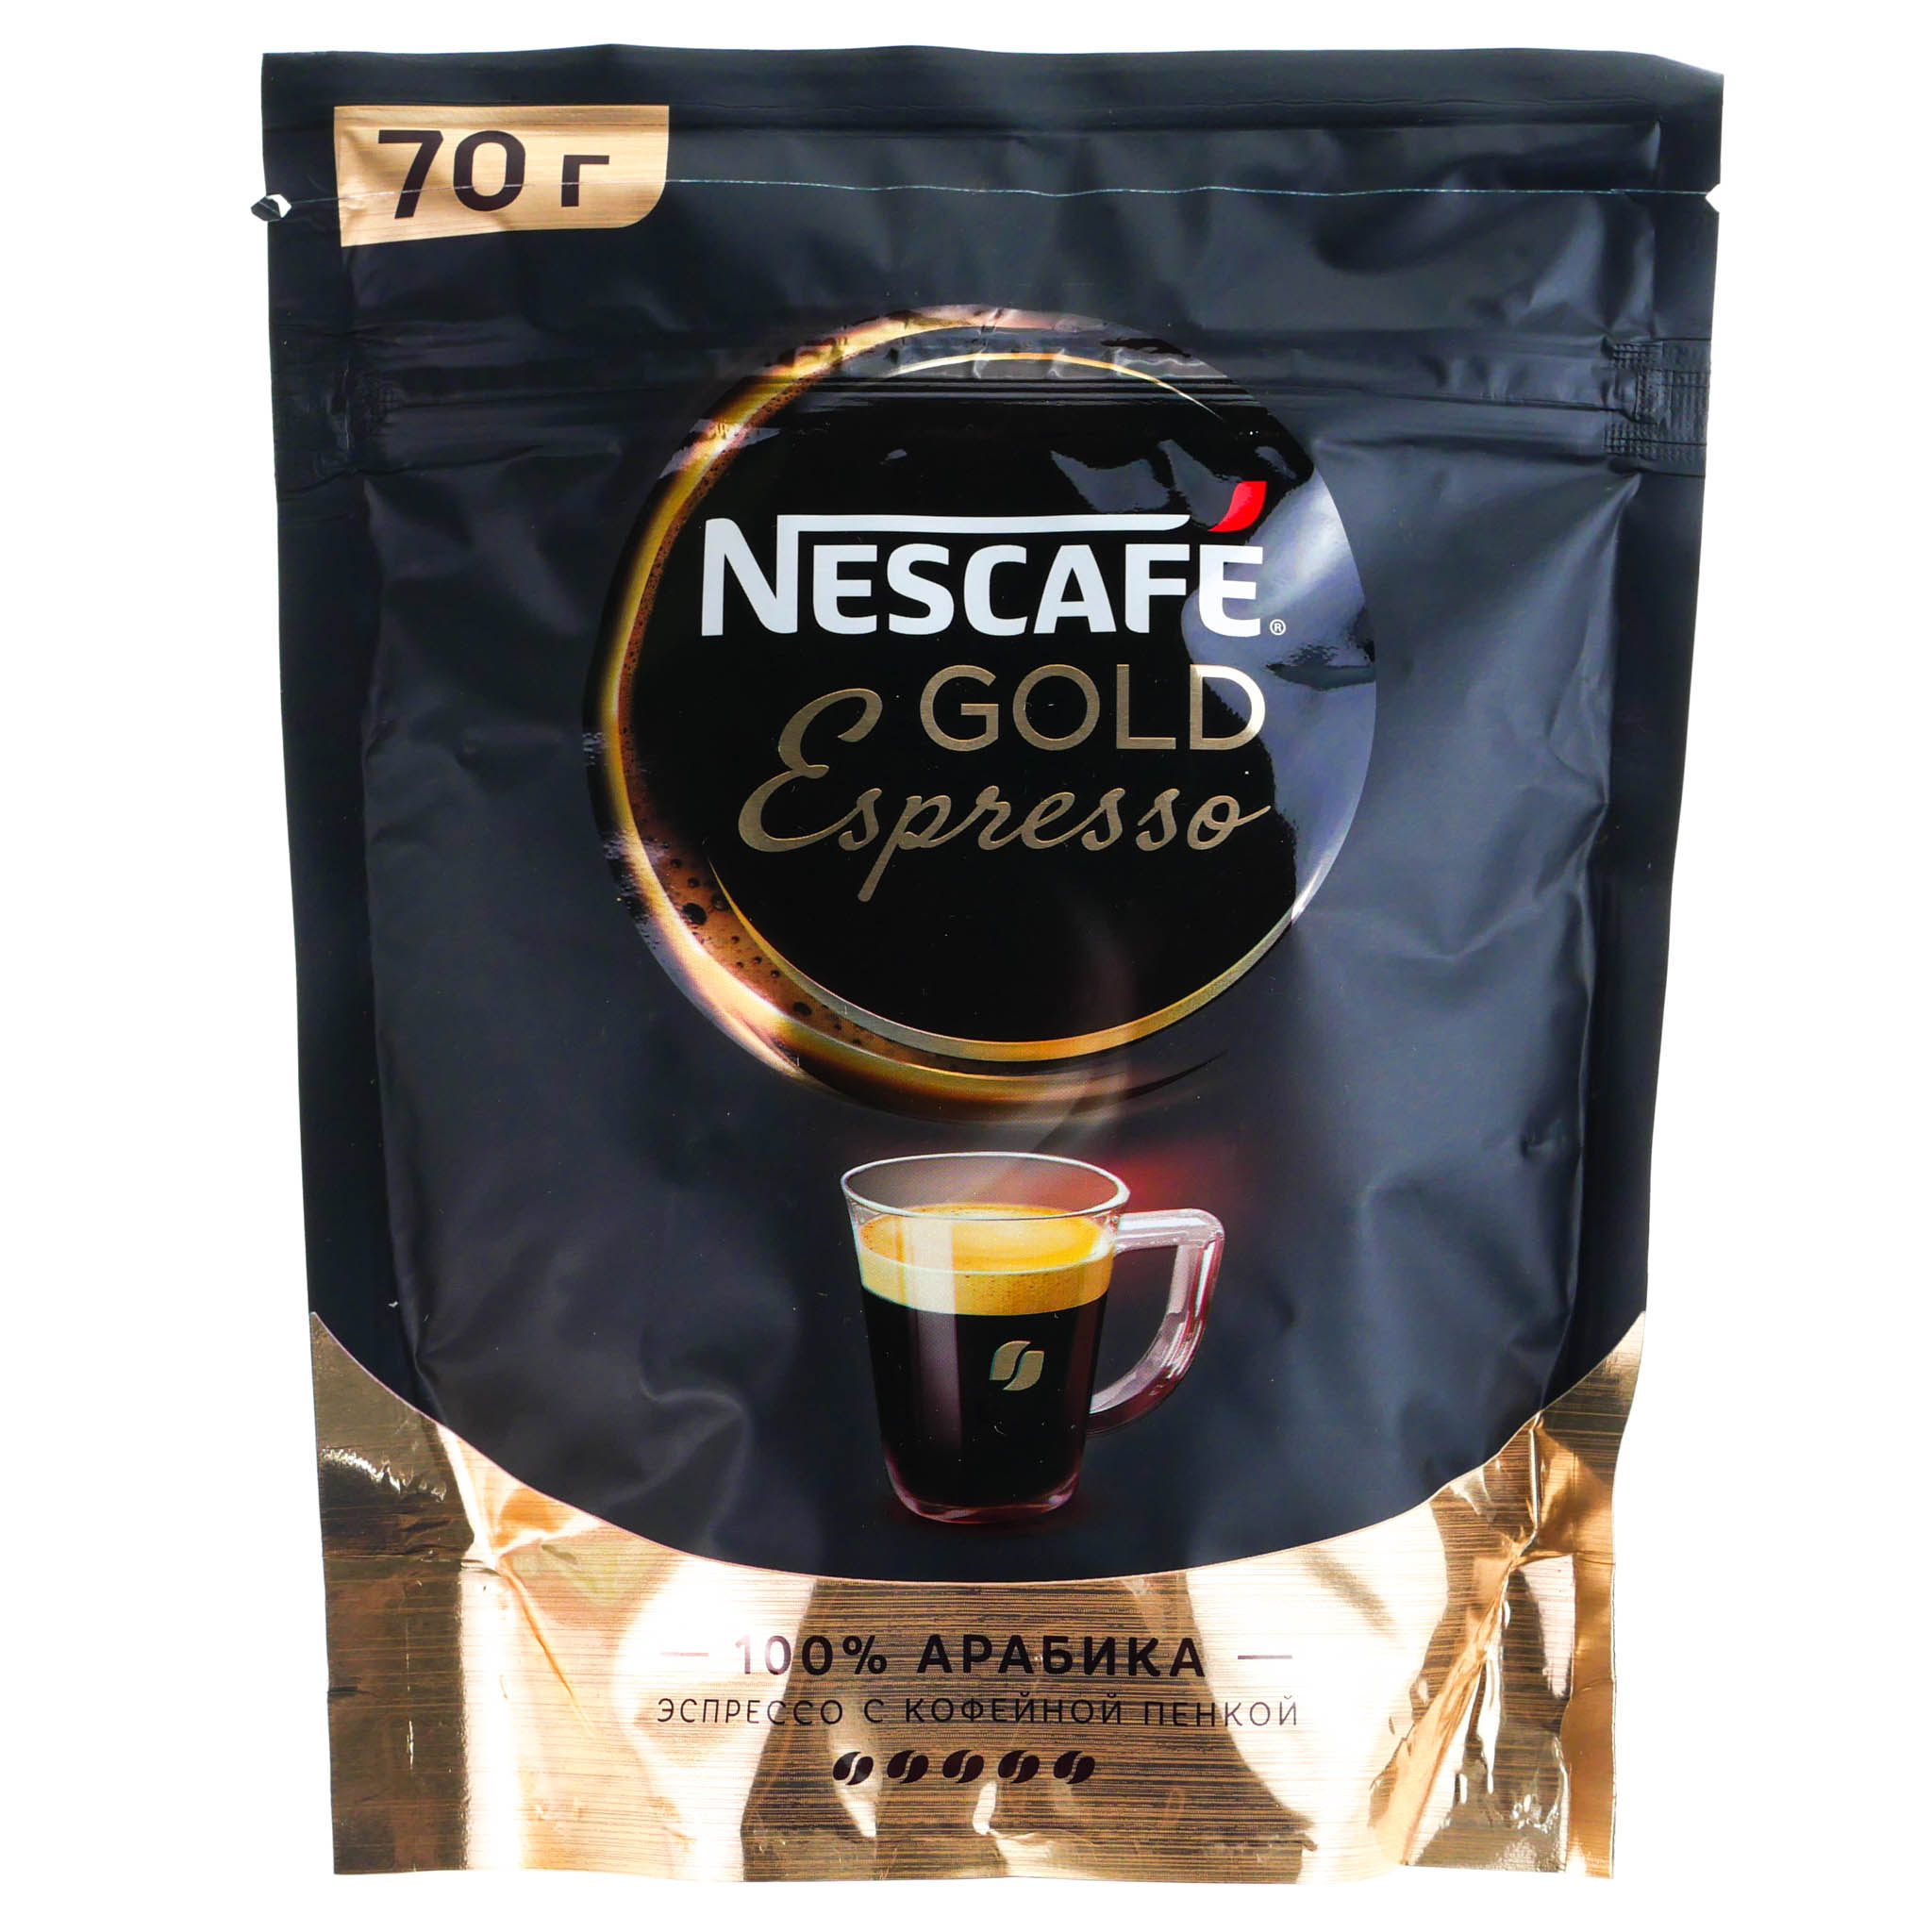 Крема эспрессо. Нескафе Голд эспрессо 70г. Кофе Nescafe Gold Espresso растворимый. Нескафе Голд эспрессо 85г с/б. Нескафе Голд эспрессо Арабика.